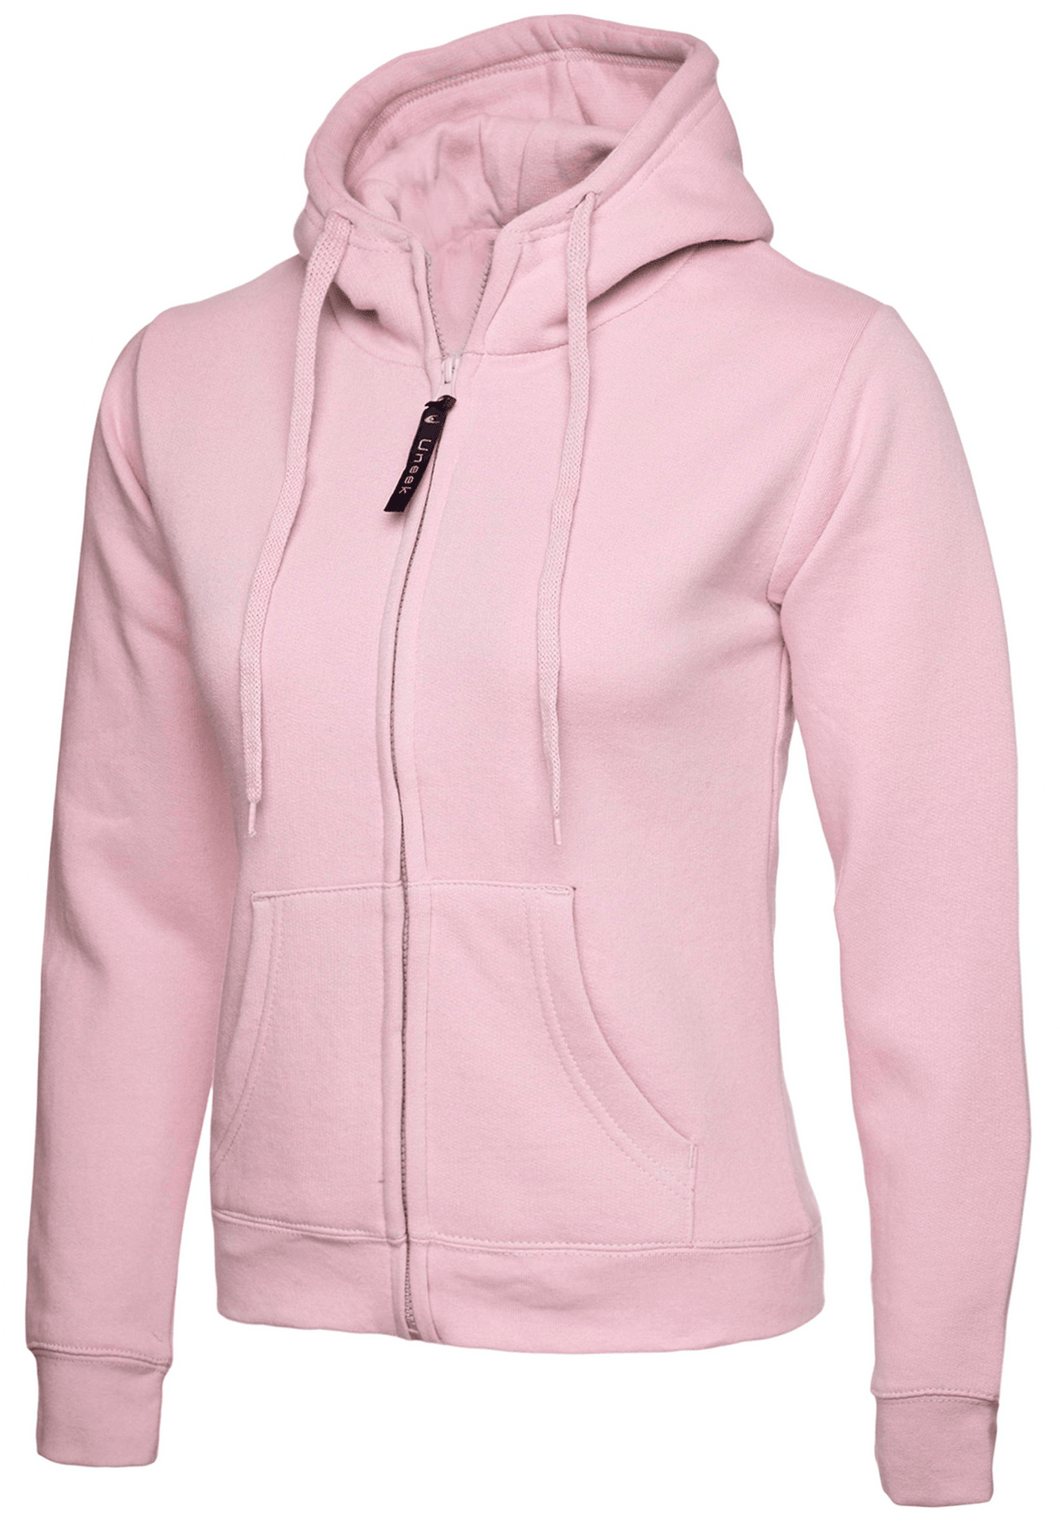 Womens Uneek Zip Up Hoody UC505 Sweatshirts / Hoodies Gazelle Sports UK XS/8 Pink Yes